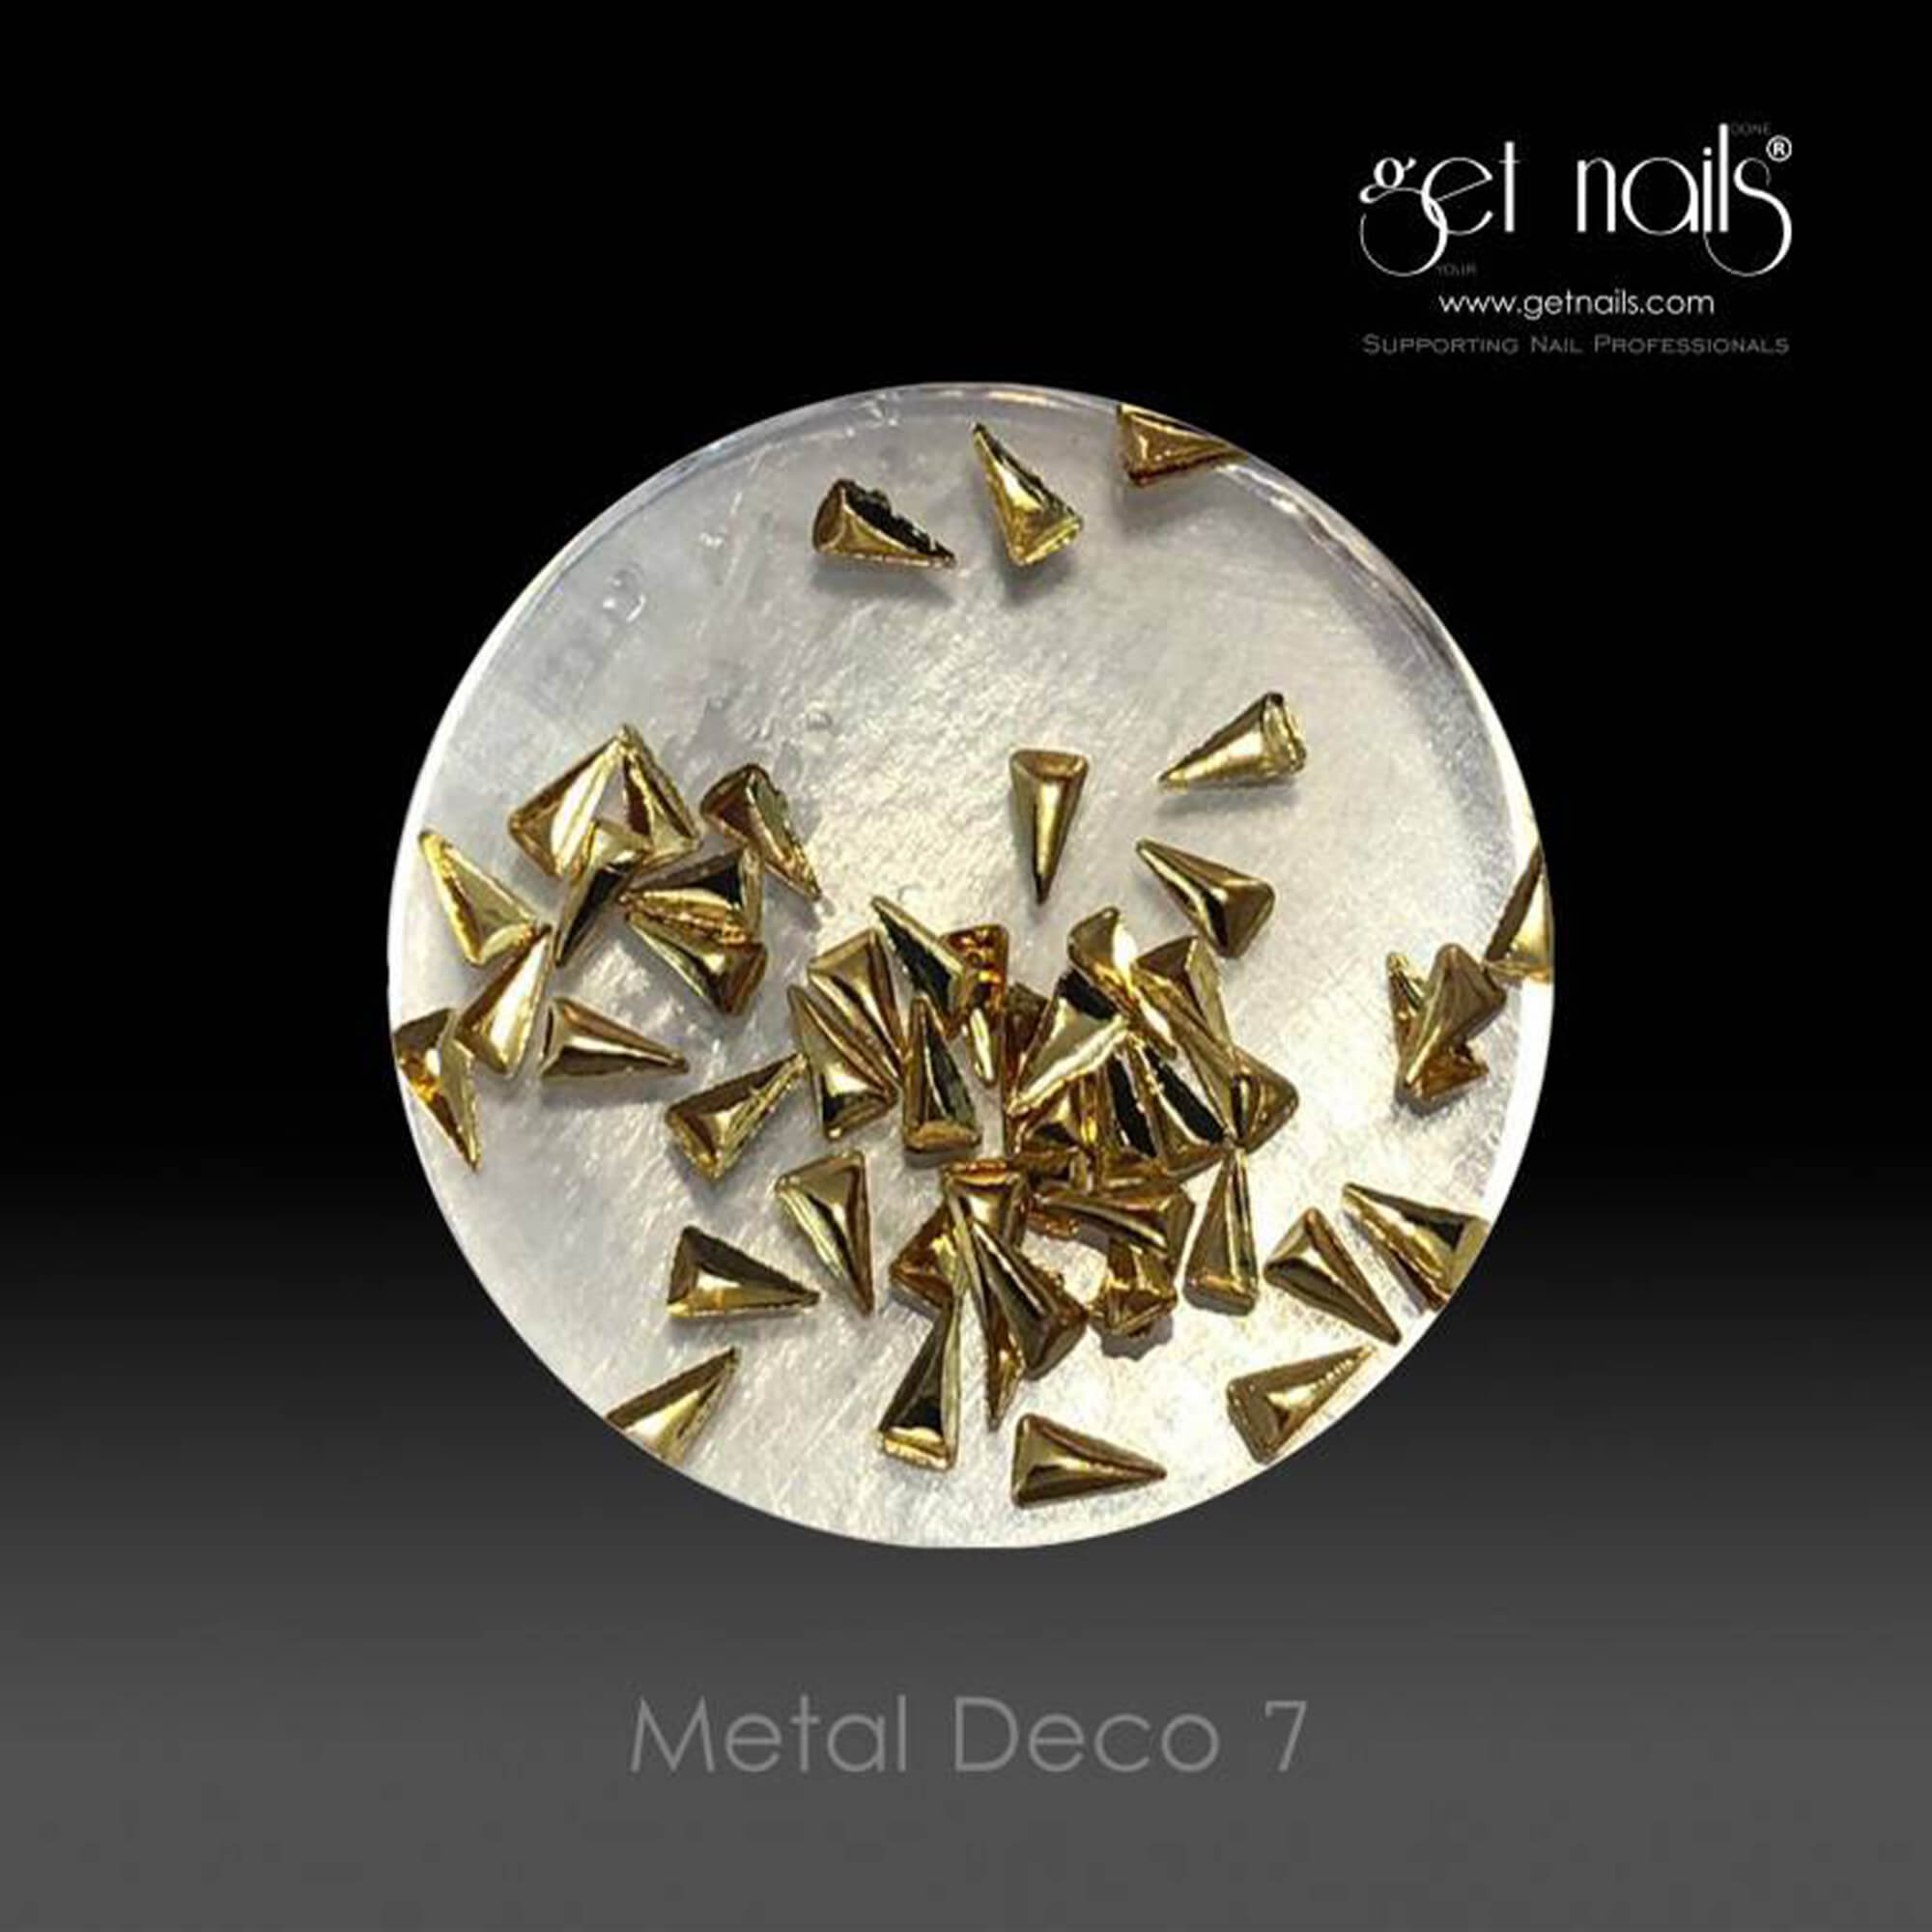 Get Nails Austria - Metal Deco 7 Gold, 50 buc